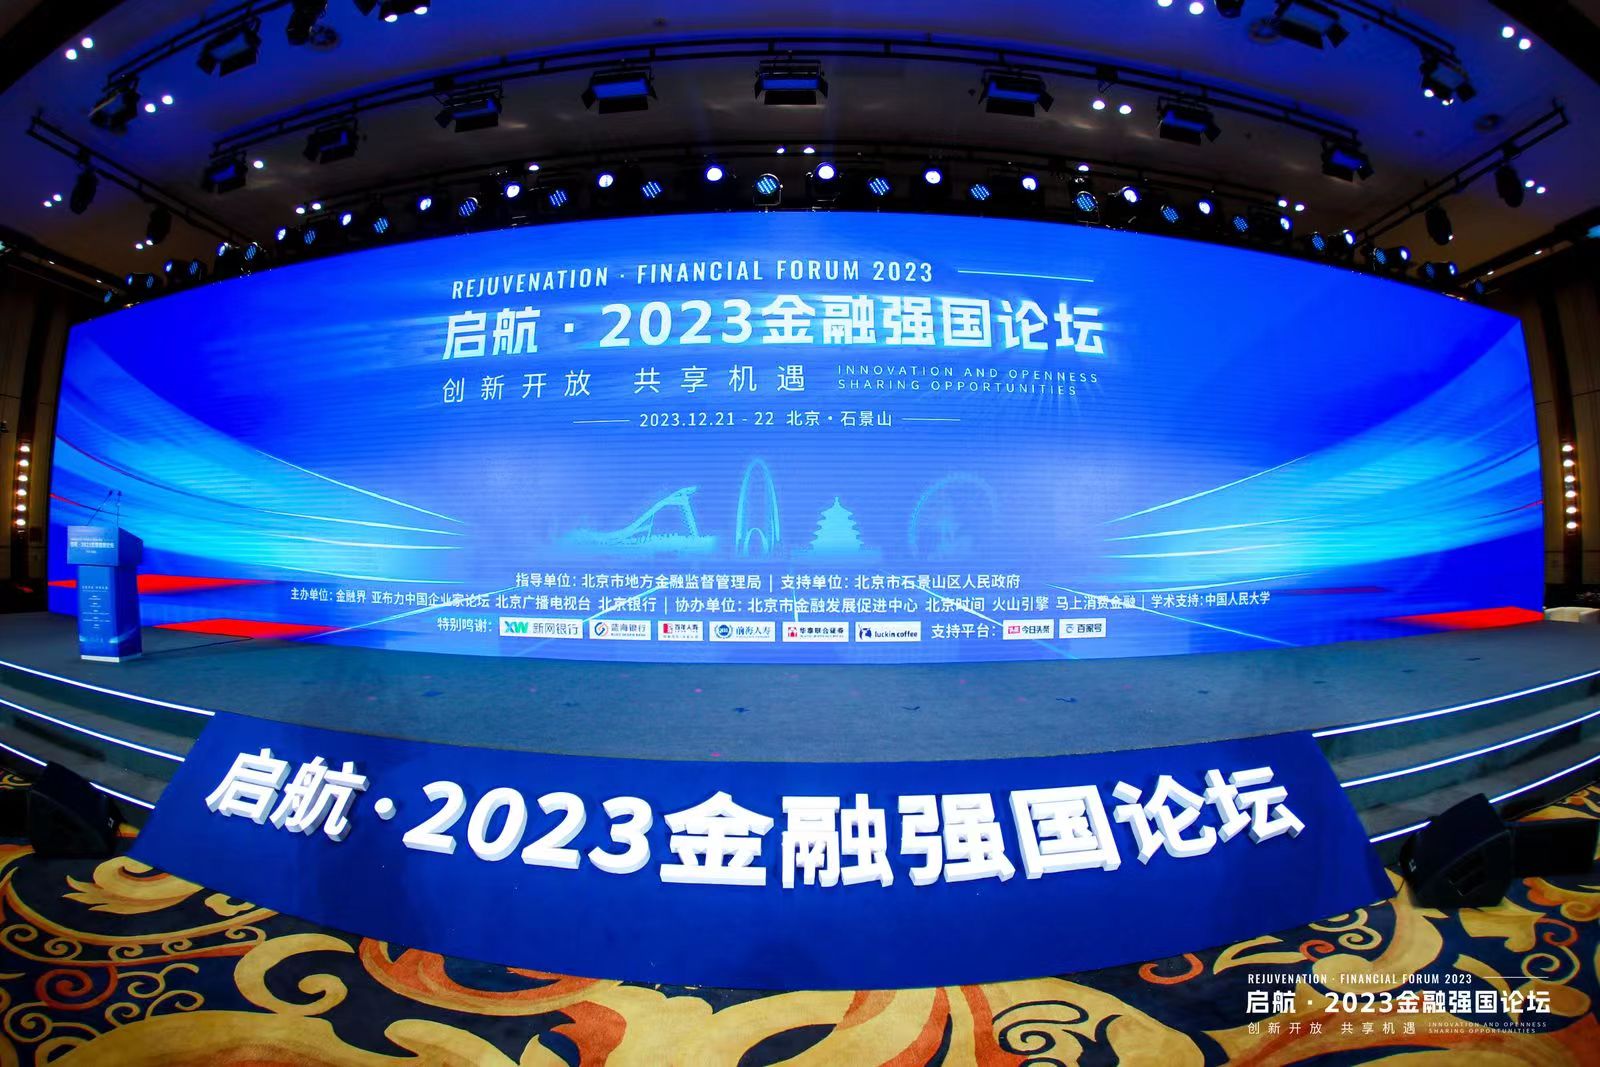 中亦科技受邀参加“启航·2023 金融强国论坛”